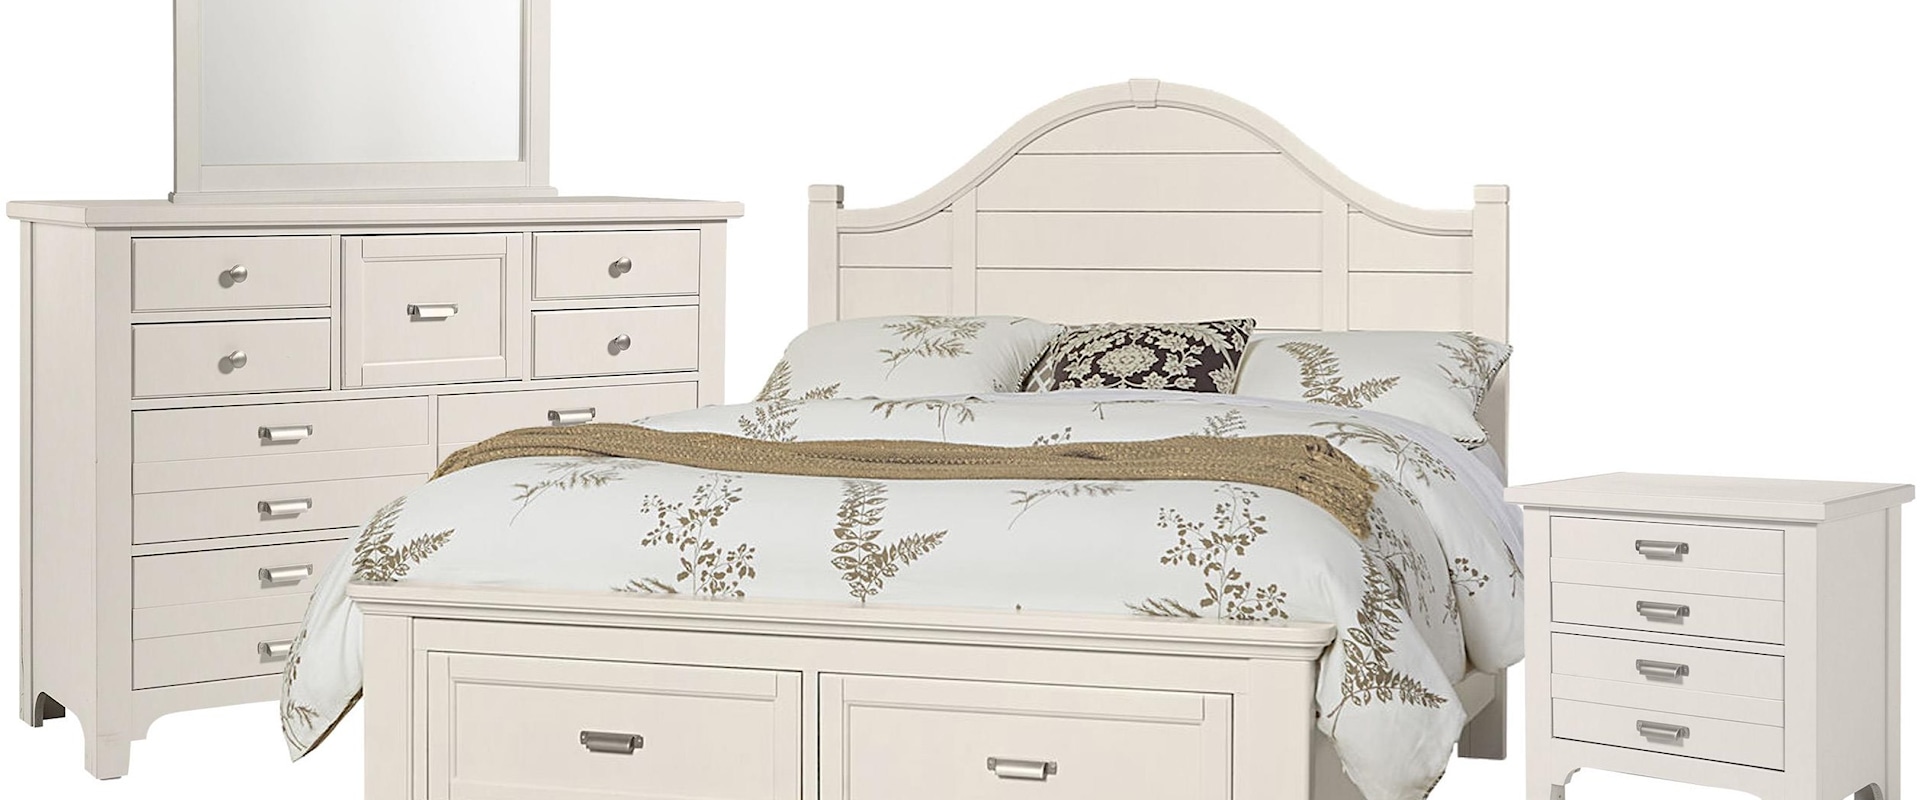 Queen Arch Storage Bed, 9 Drawer Dresser, Master Landscape Mirror, 2 Drawer Nightstand